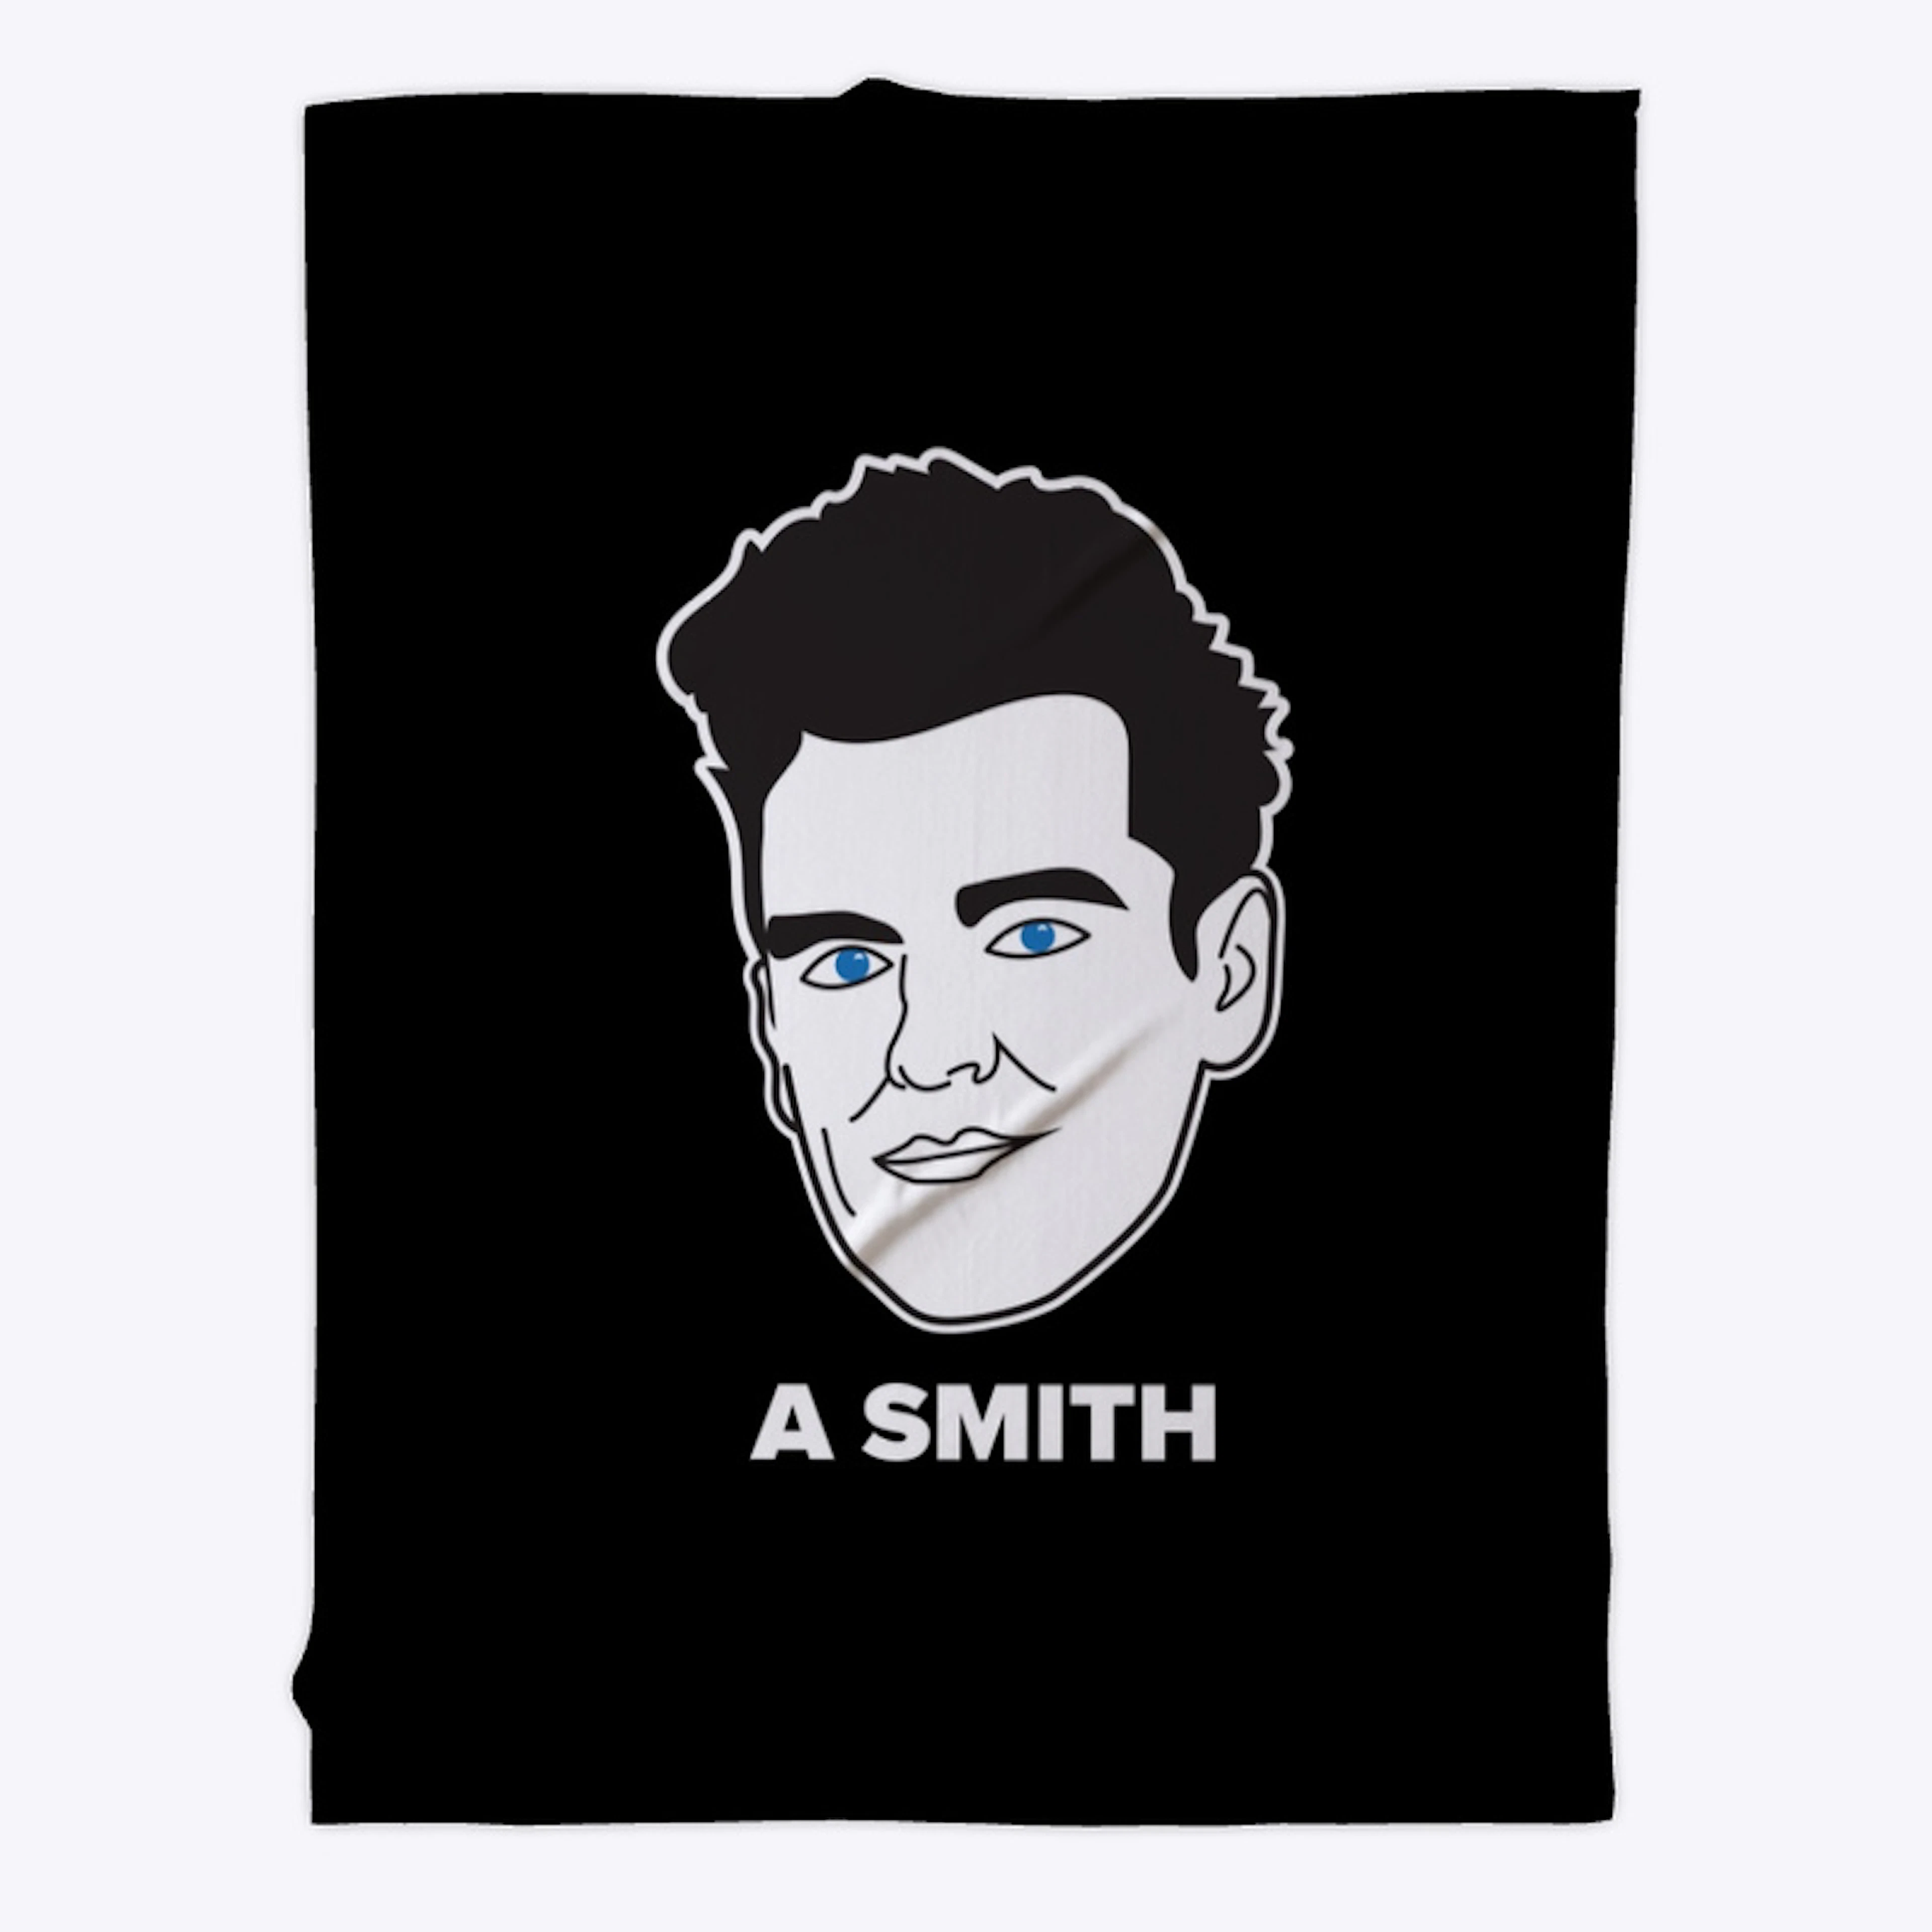 "A" Smith